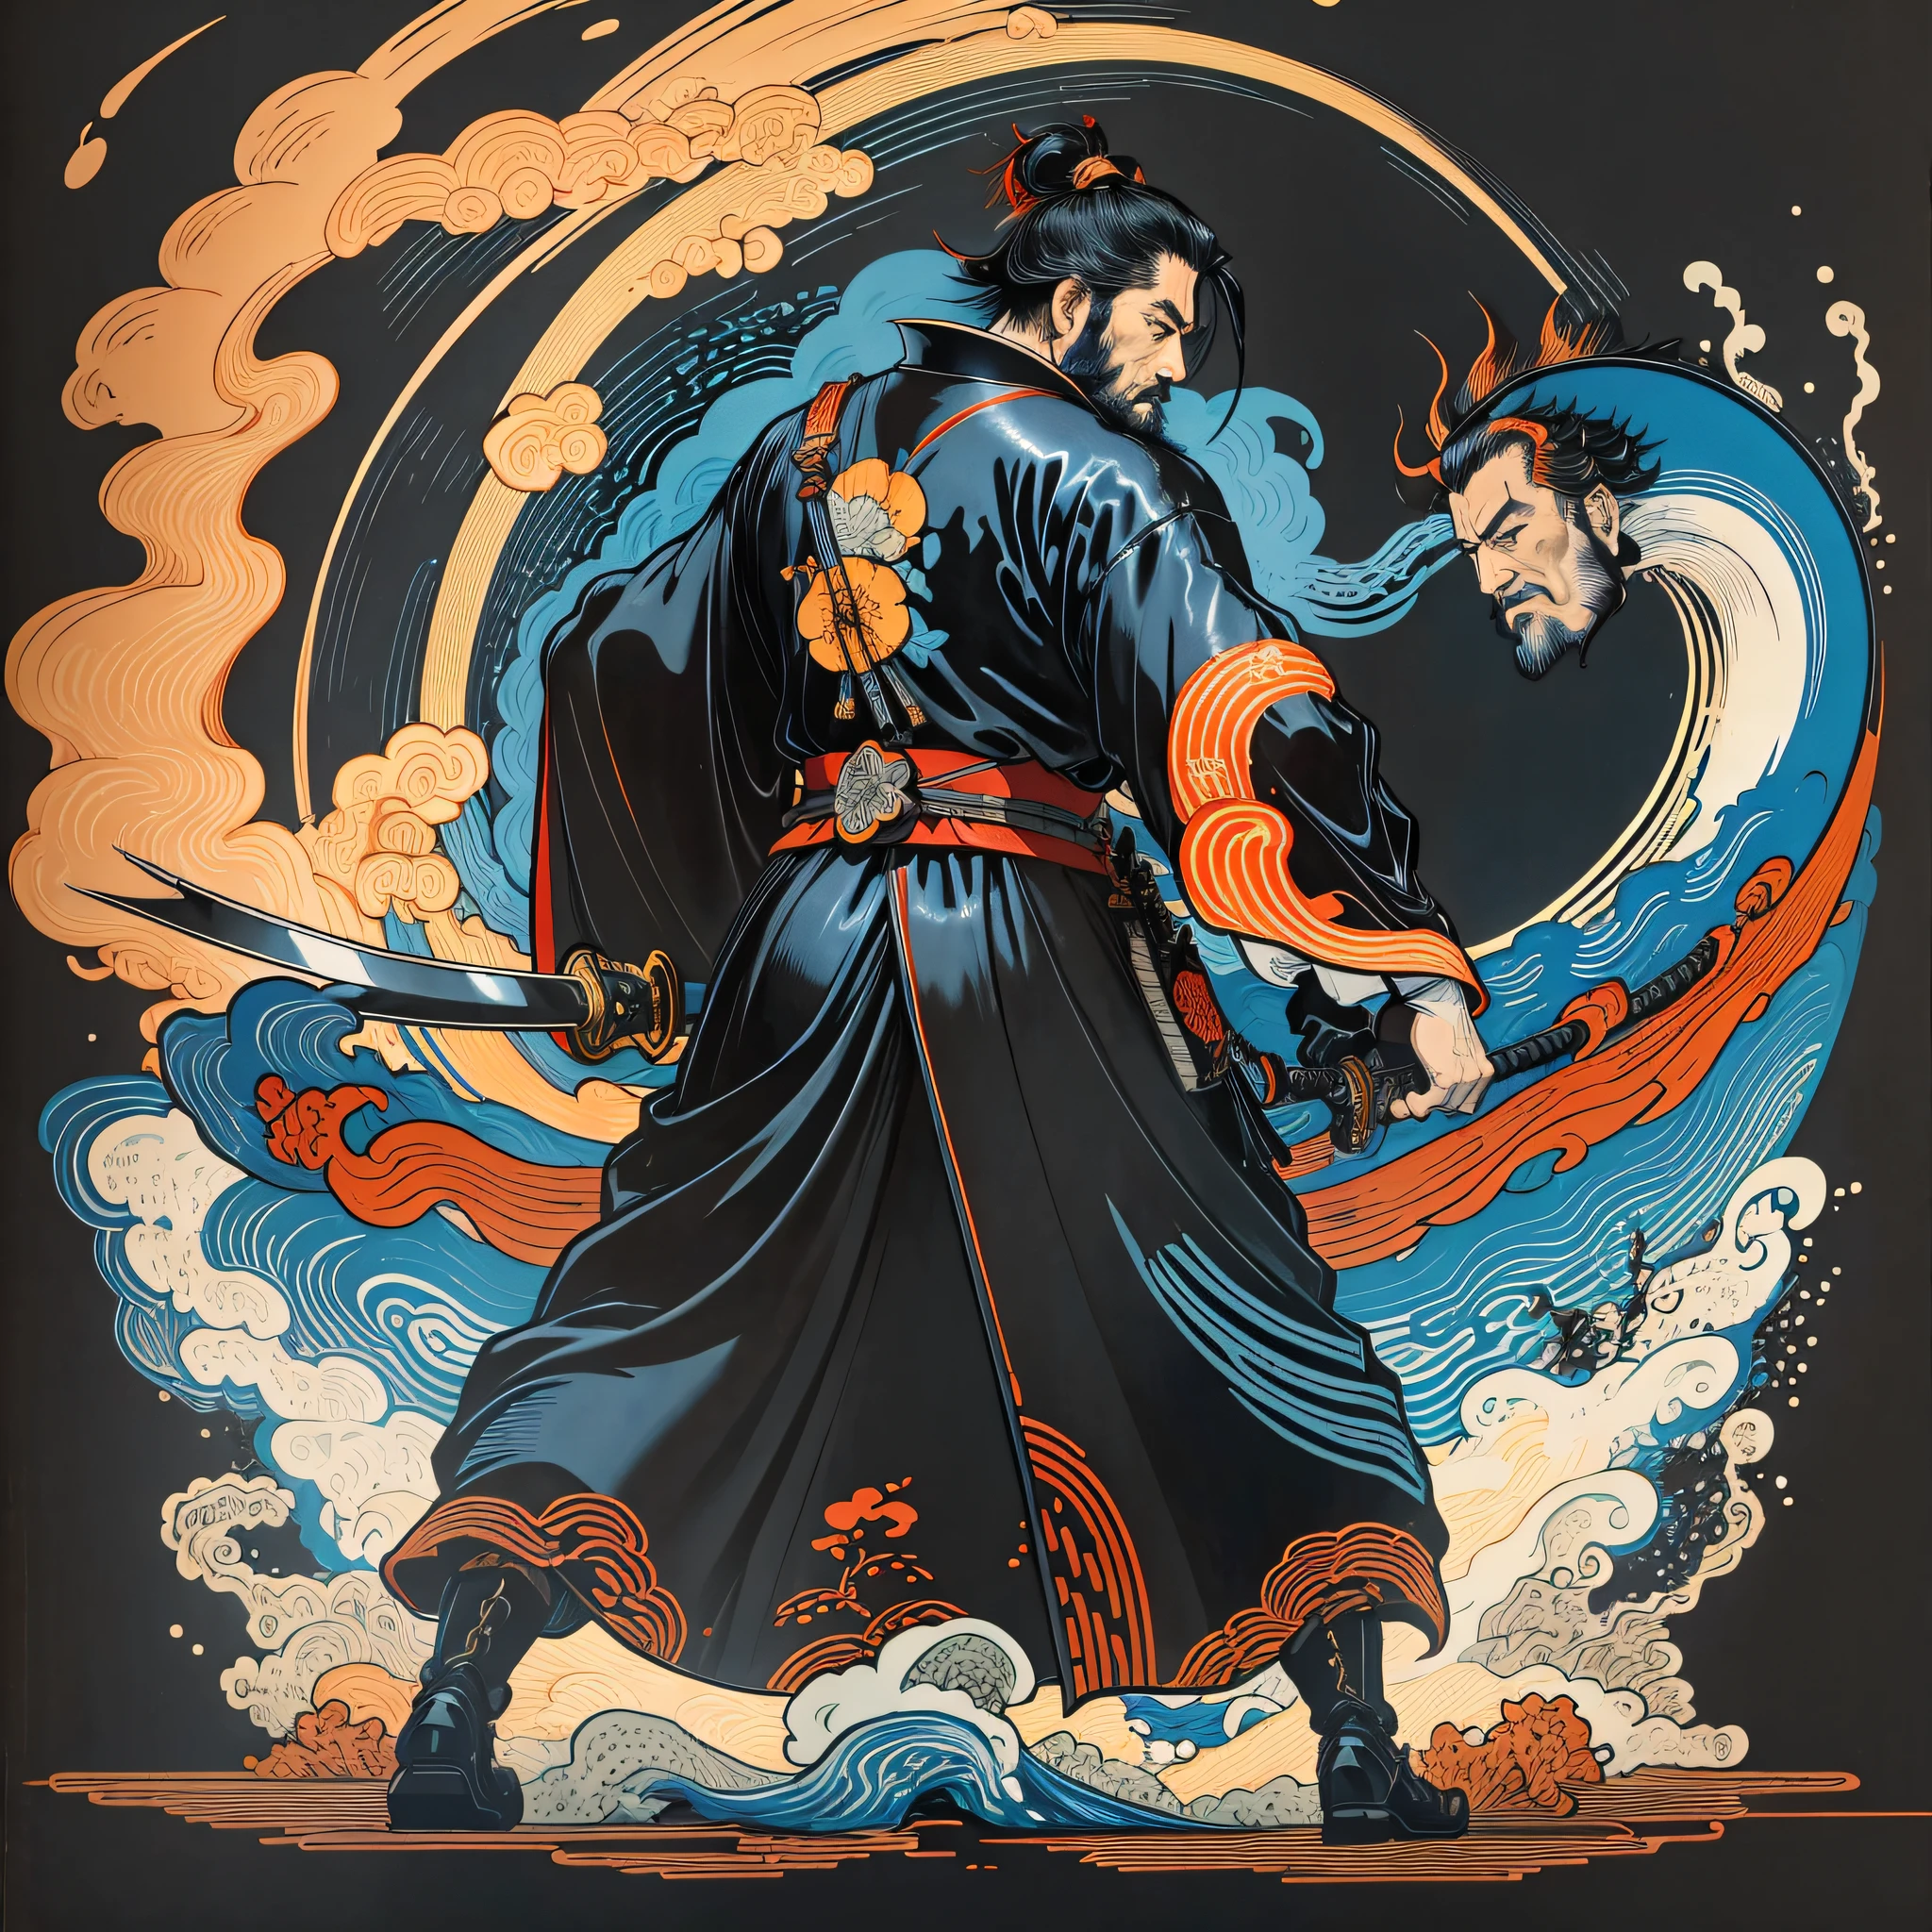 Il s&#39;agit d&#39;une peinture corporelle complète aux couleurs naturelles avec des dessins au trait de style Katsushika Hokusai.. L&#39;épéiste Miyamoto Musashi a un grand corps comme un homme fort. Samouraï du Japon. Il a une expression digne, mais viril, de détermination, cheveux noirs courts et barbe courte et taillée. Le haut de son corps est recouvert d&#39;un kimono noir et son hakama arrive à hauteur des genoux.. Dans sa main droite, il tient une épée japonaise avec une partie d&#39;épée plus longue. Dans la plus haute qualité, dans les éclairs et les flammes tournantes de style ukiyo-e haute résolution du chef-d&#39;œuvre. Miyamoto Musashi est debout, le visage et le corps tournés vers l&#39;avant., directement en arrière. Créez l&#39;image dans 16 formats d&#39;image:9. Mettez le samouraï au centre et créez de nouveaux concepts. en même temps sois minimaliste